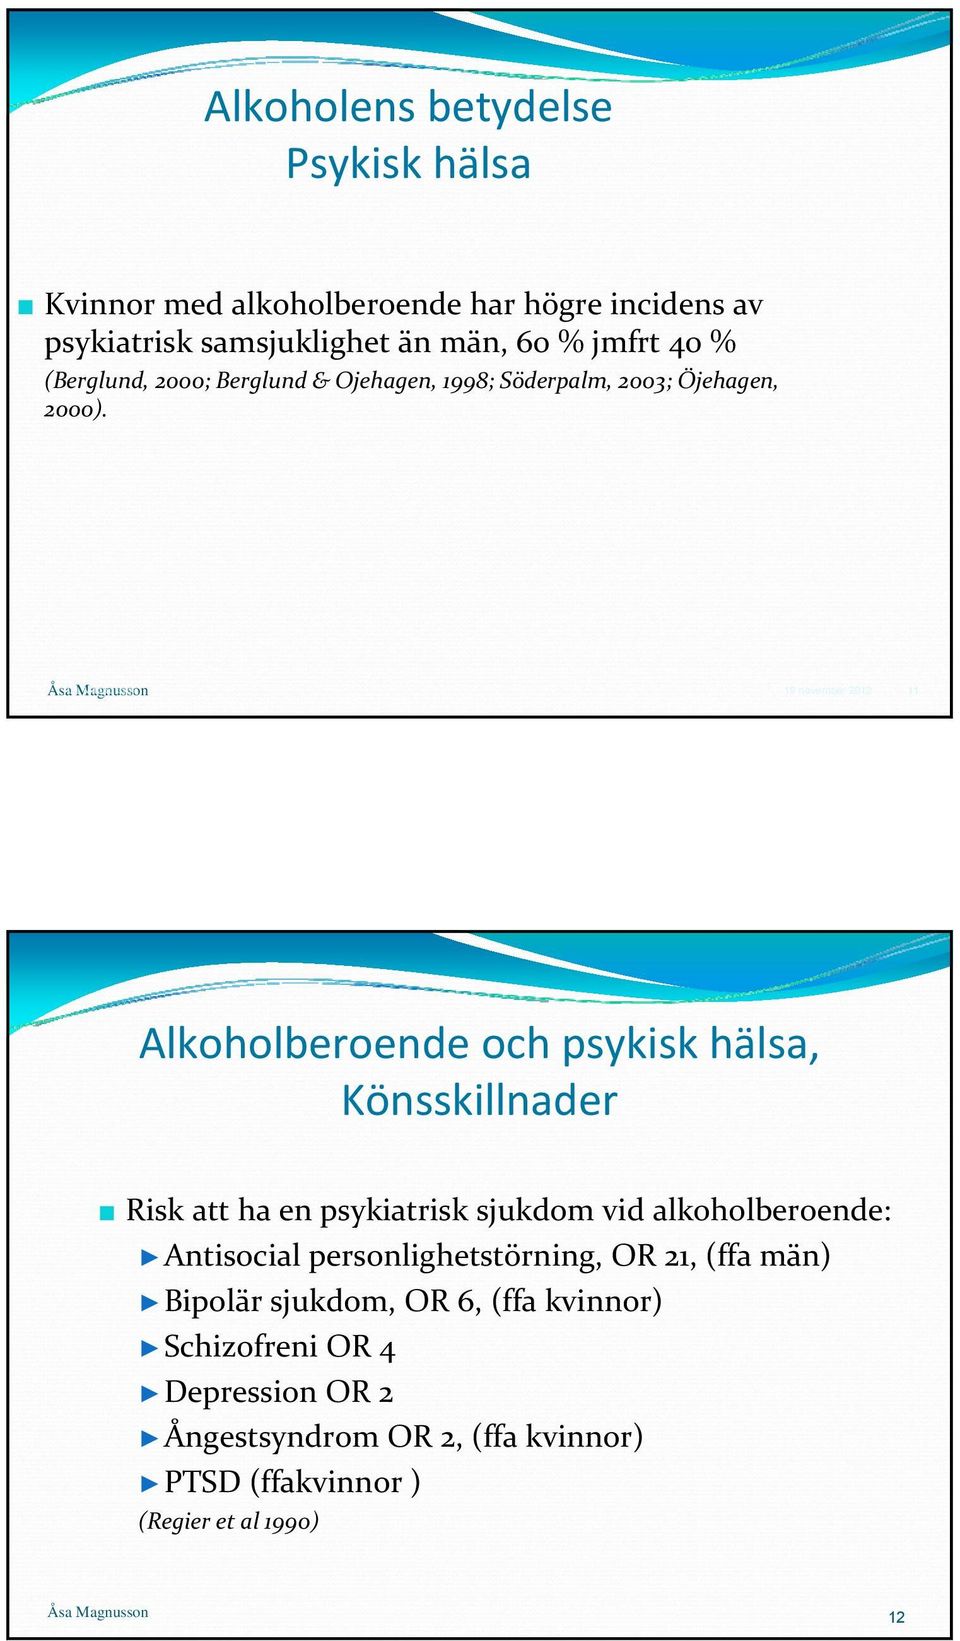 Åsa Åsa Magnusson 19 november 2012 11 Alkoholberoende och psykisk hälsa, Könsskillnader Risk att ha en psykiatrisk sjukdom vid